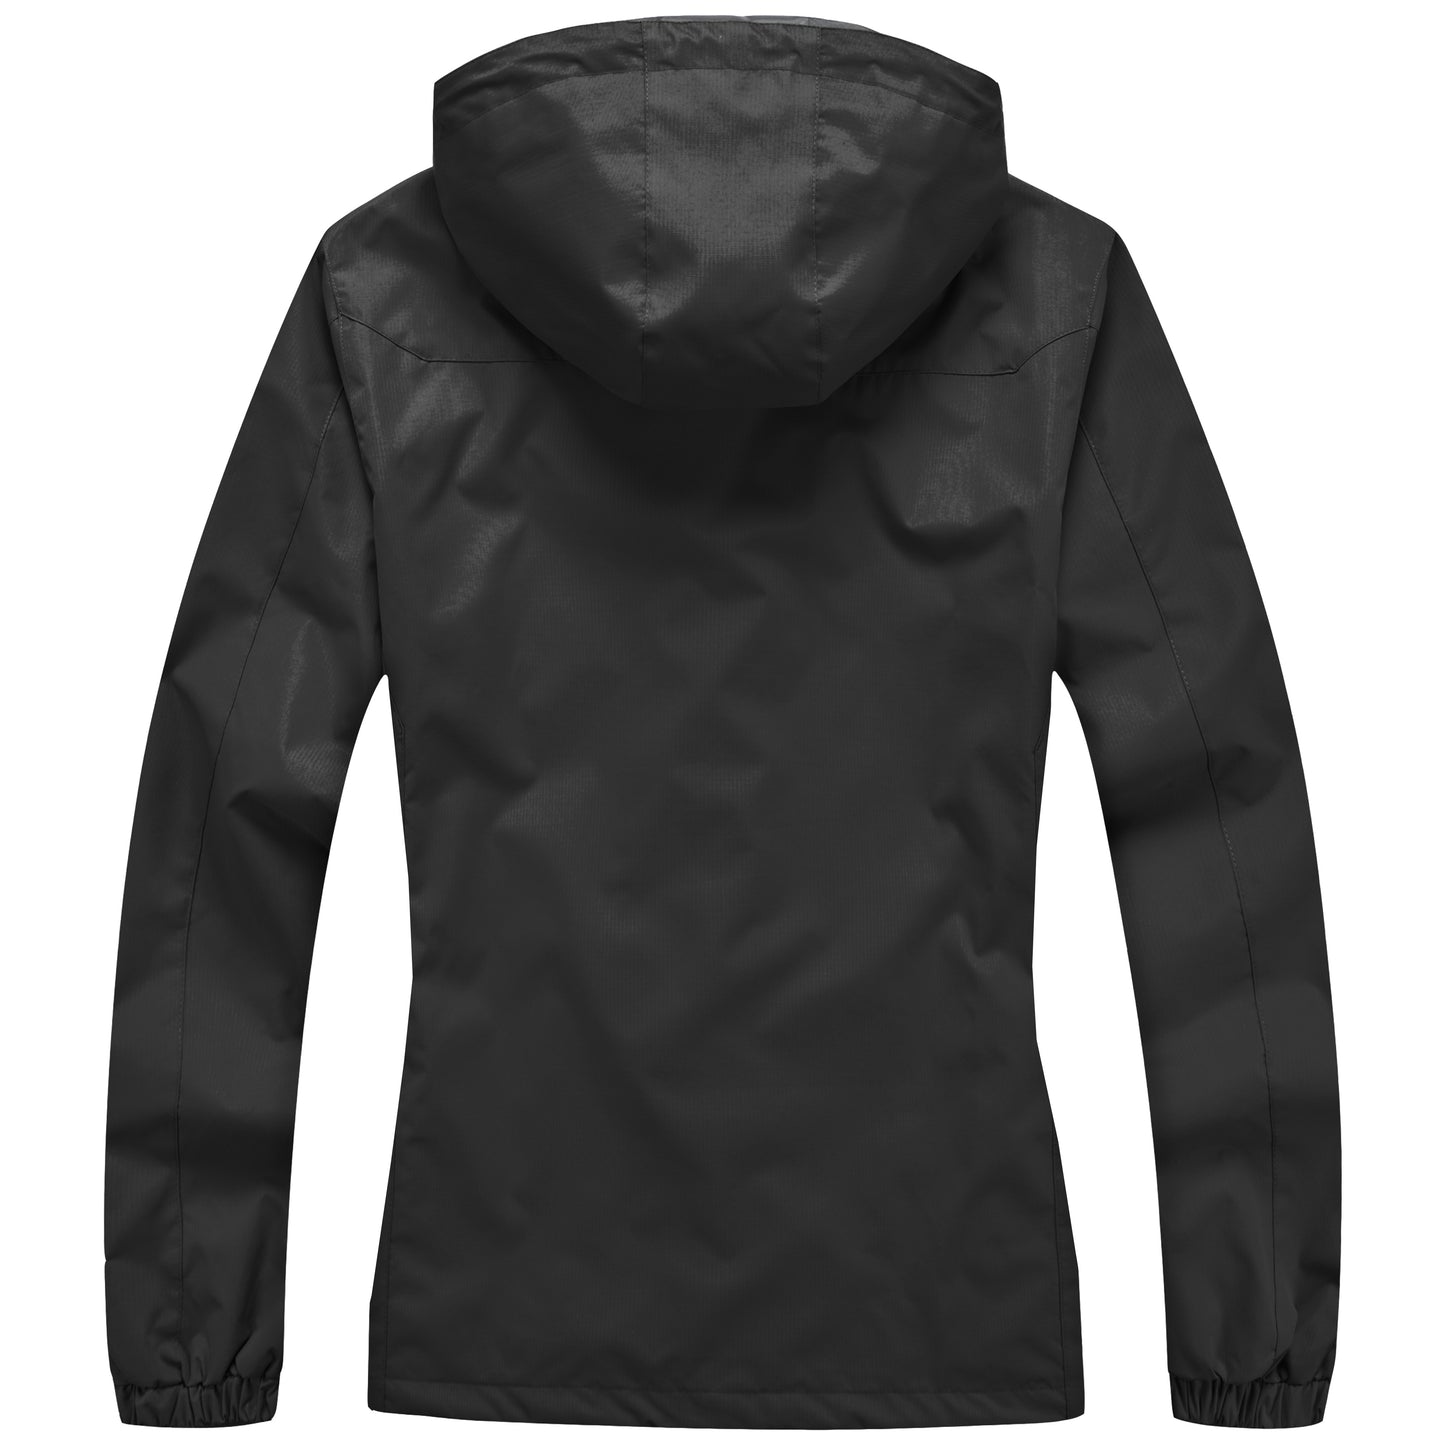 Ladies Waterproof Rain Jacket - Black